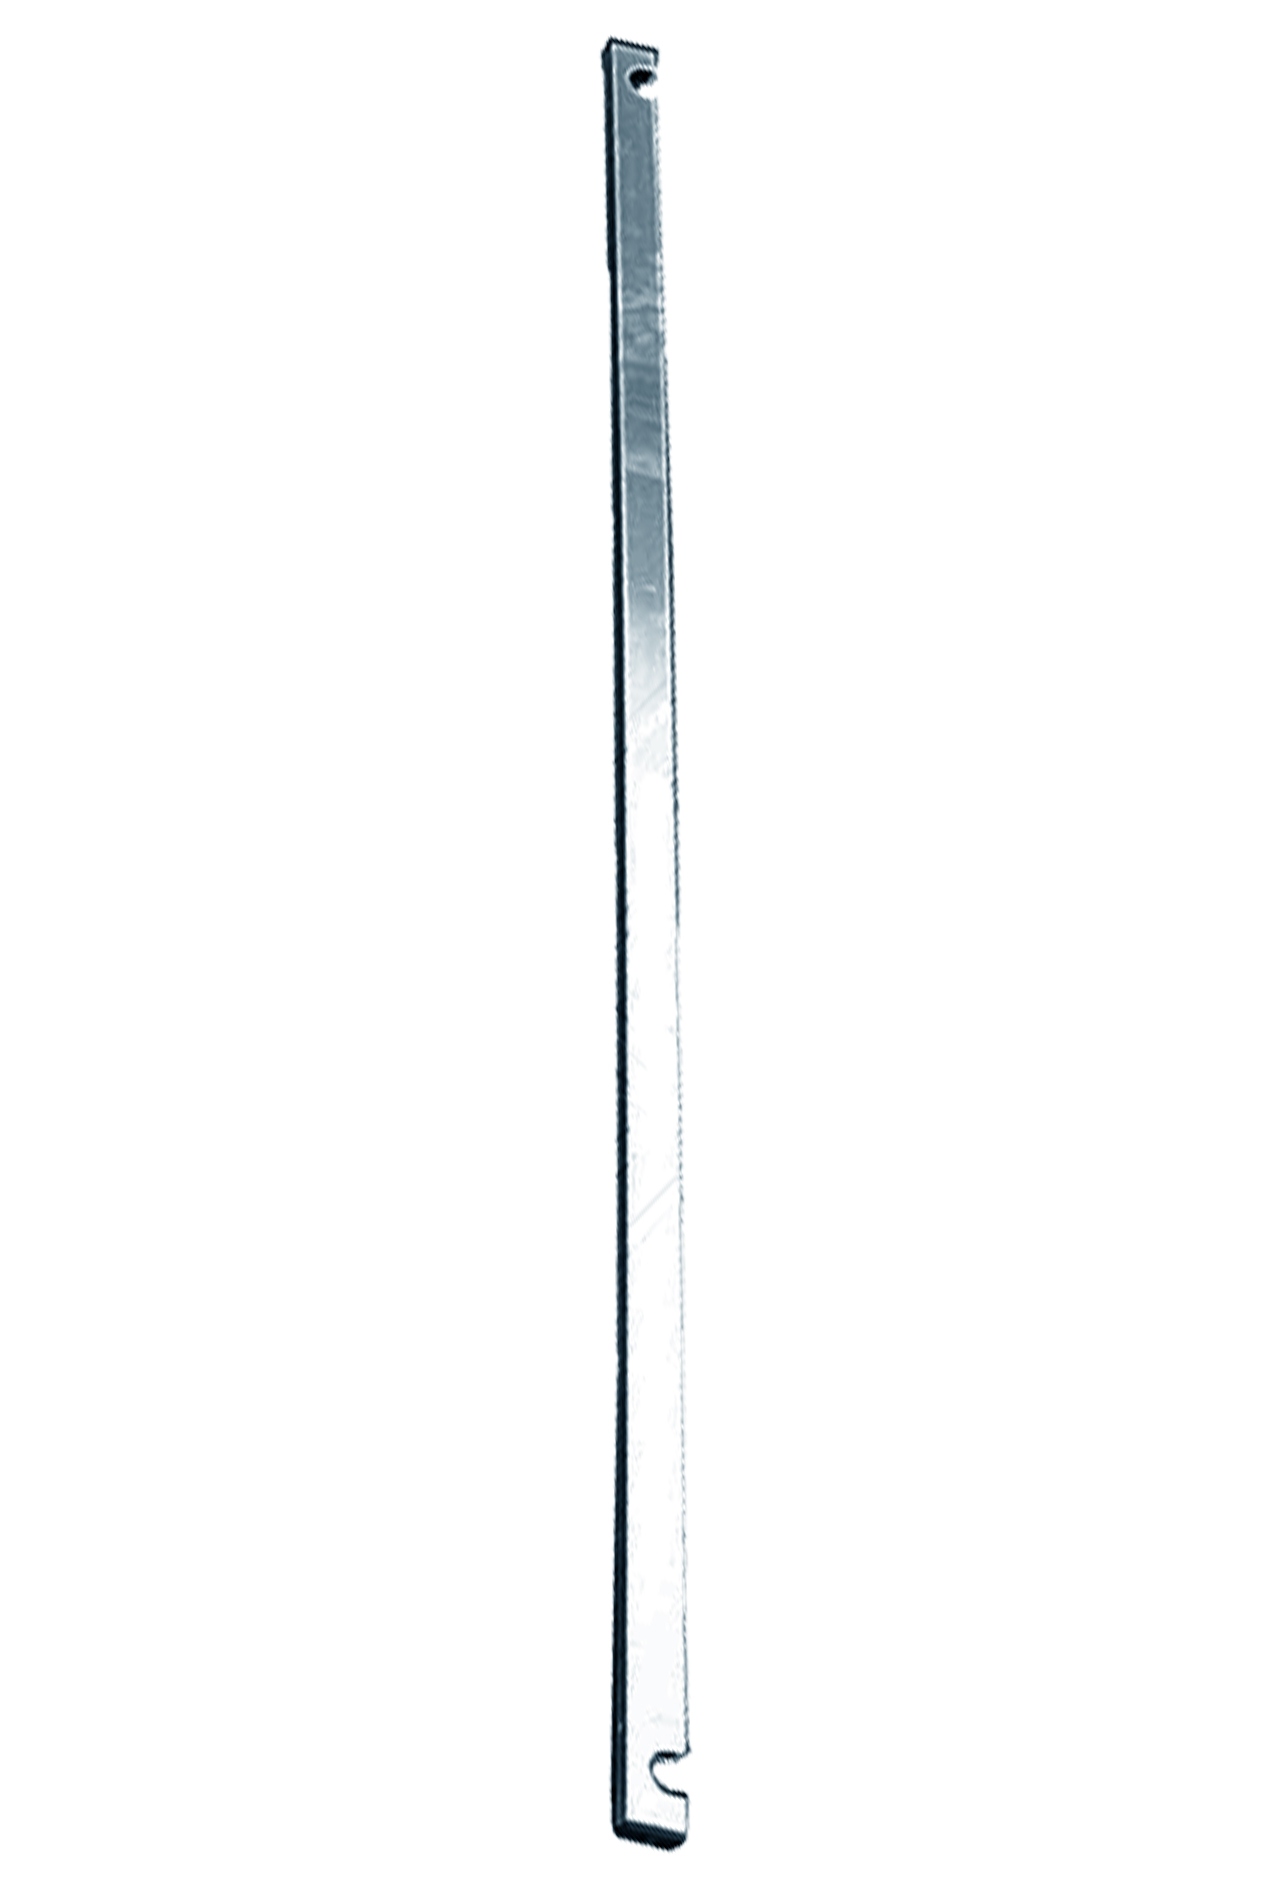 Дополнительное изображение Stabilo серии 1000 рабочая высота 9,2 м, размер площадки (2.5x0.75 м)